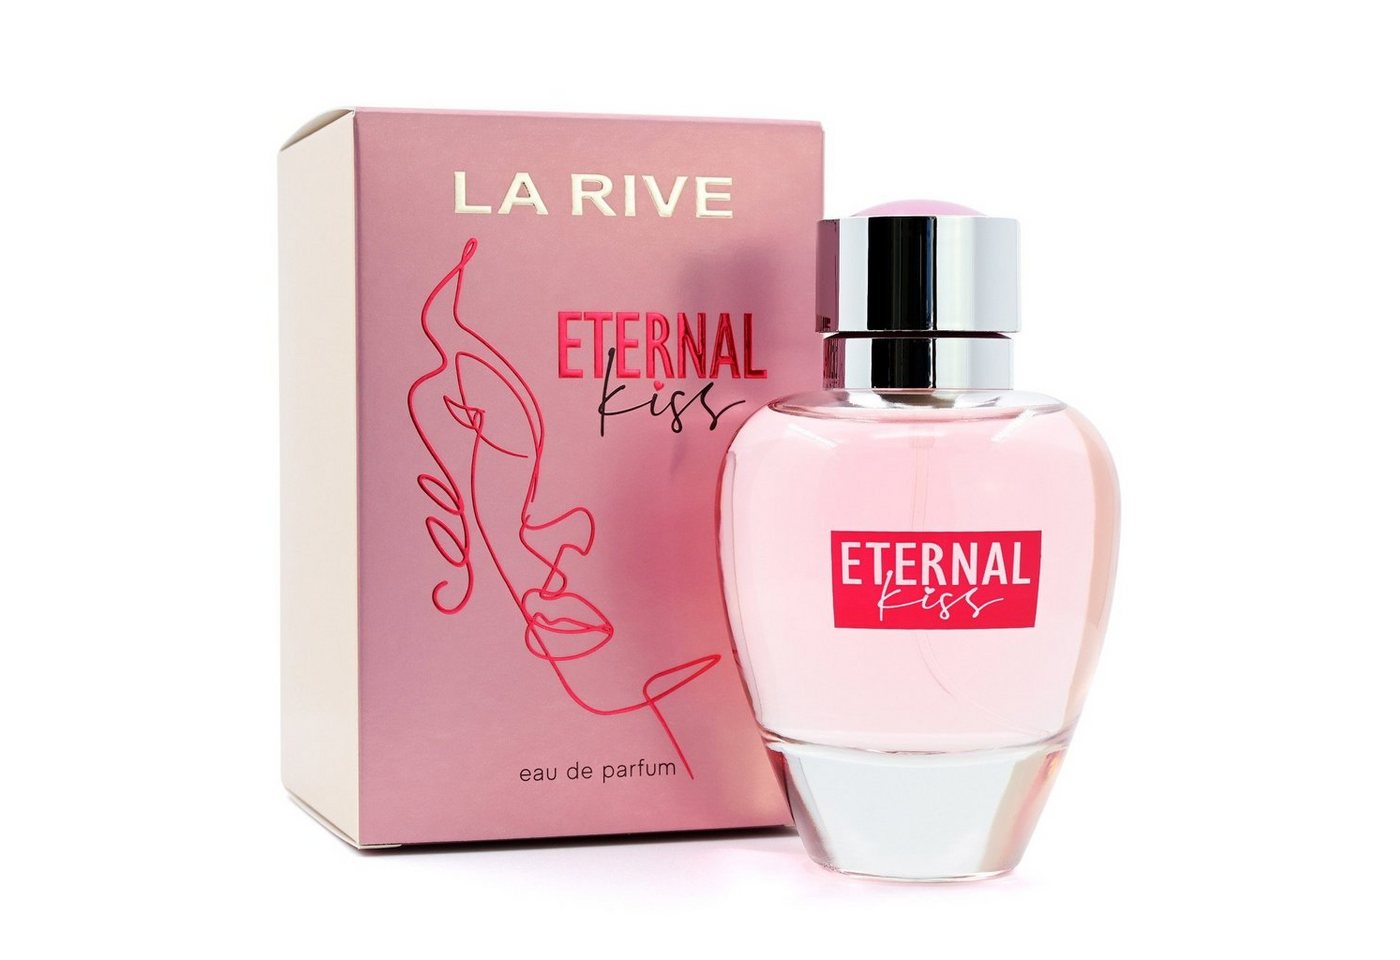 La Rive Eau de Parfum LA RIVE Eternal Kiss - Eau de Parfum - 90 ml von La Rive